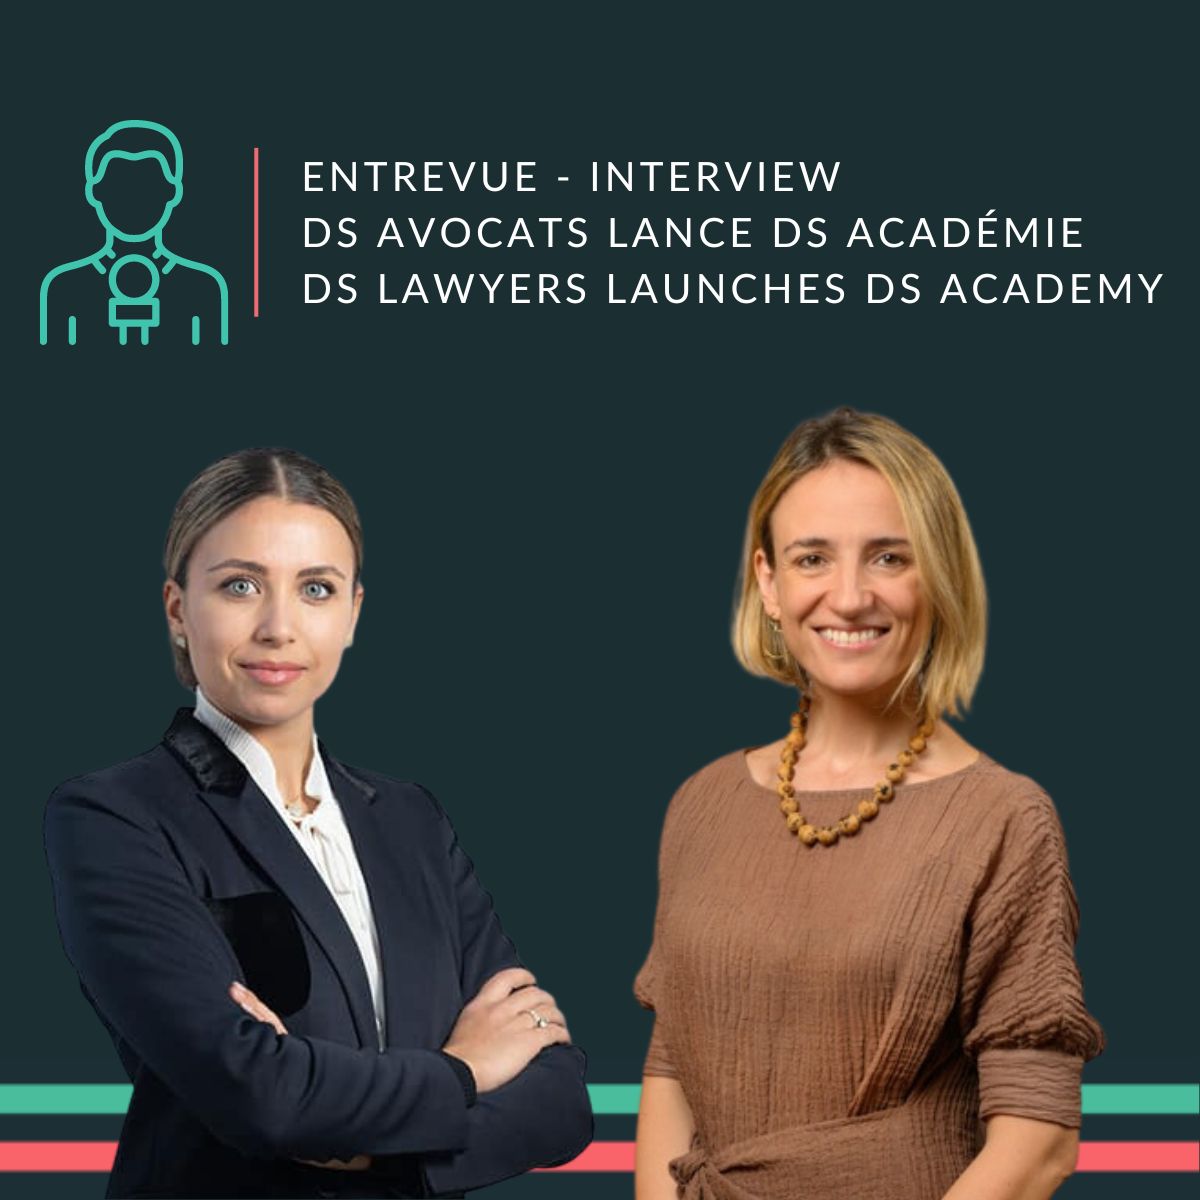 Entrevue Droit-inc. DS Avocats lance un programme pour rapprocher les avocats à l’international